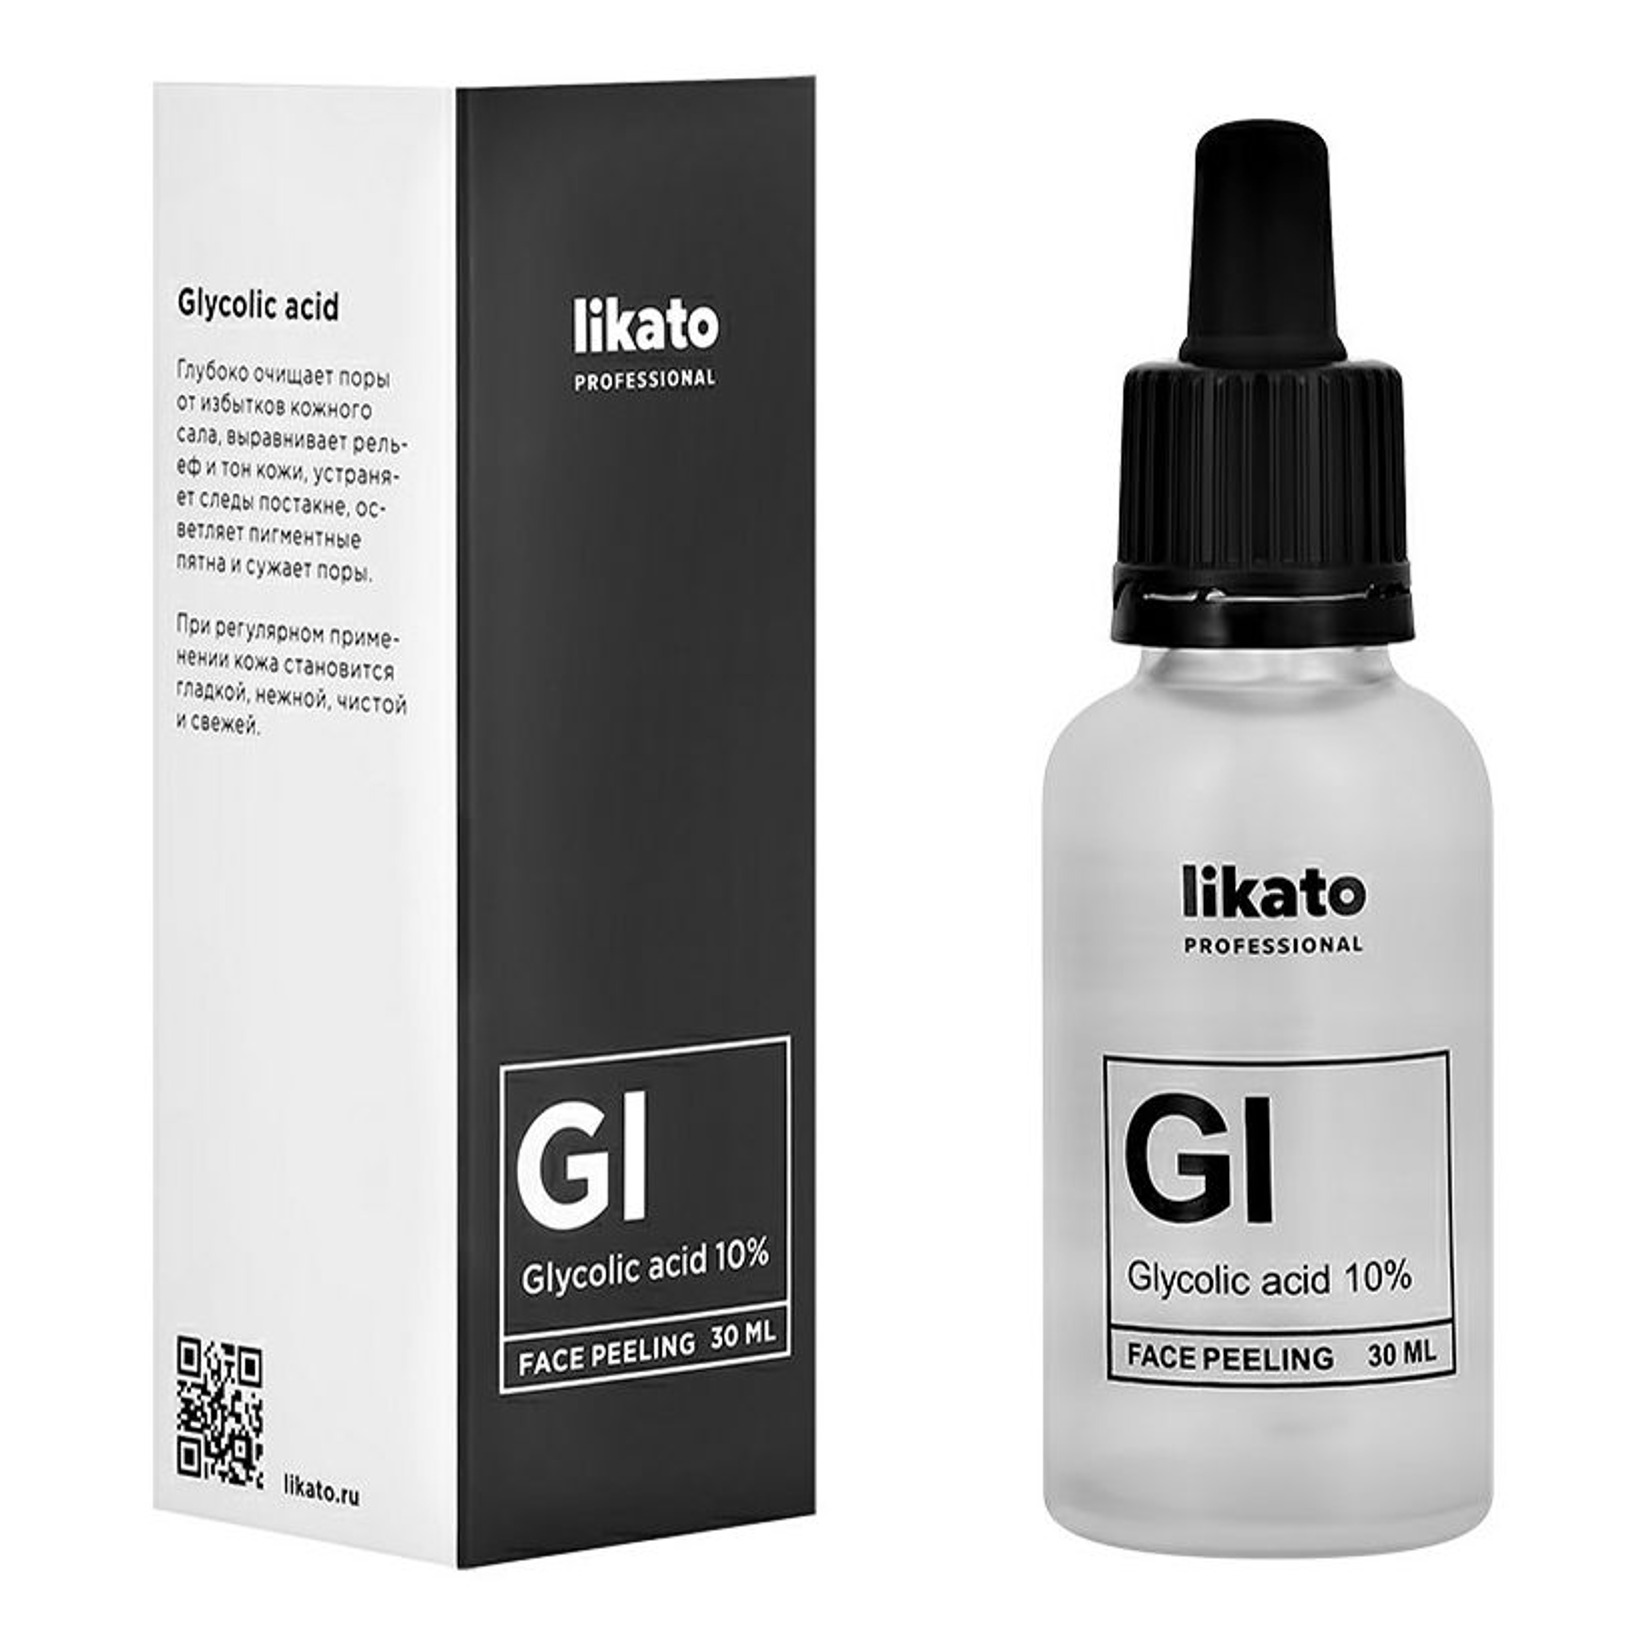 Пилинг для лица Likato Professional с гликолевой кислотой 10% 30 мл